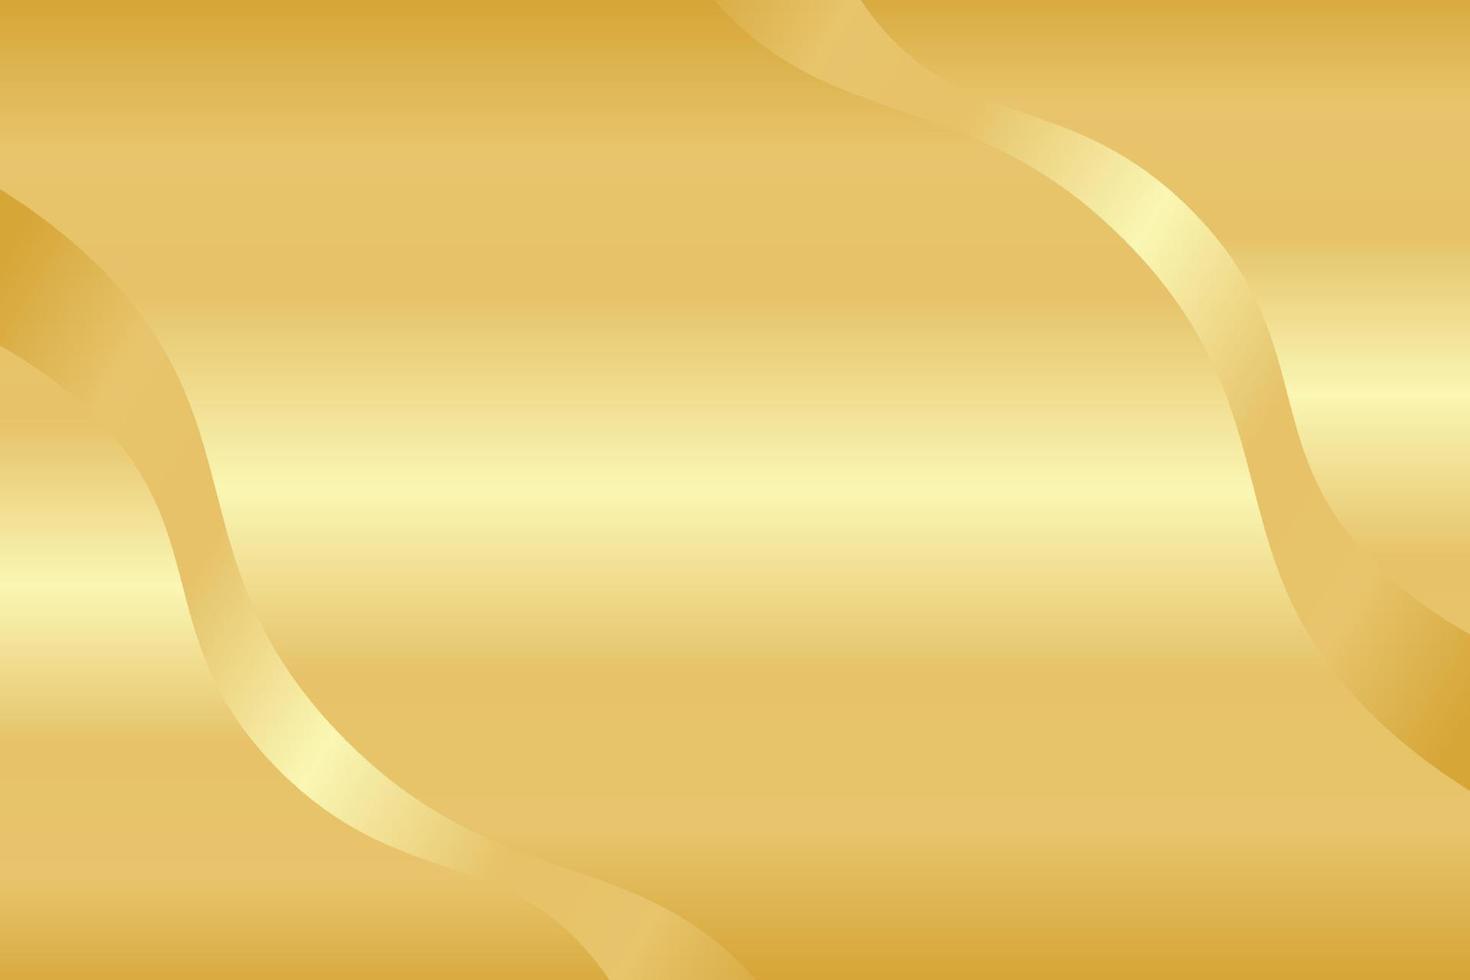 Gold Wave Background Design vector